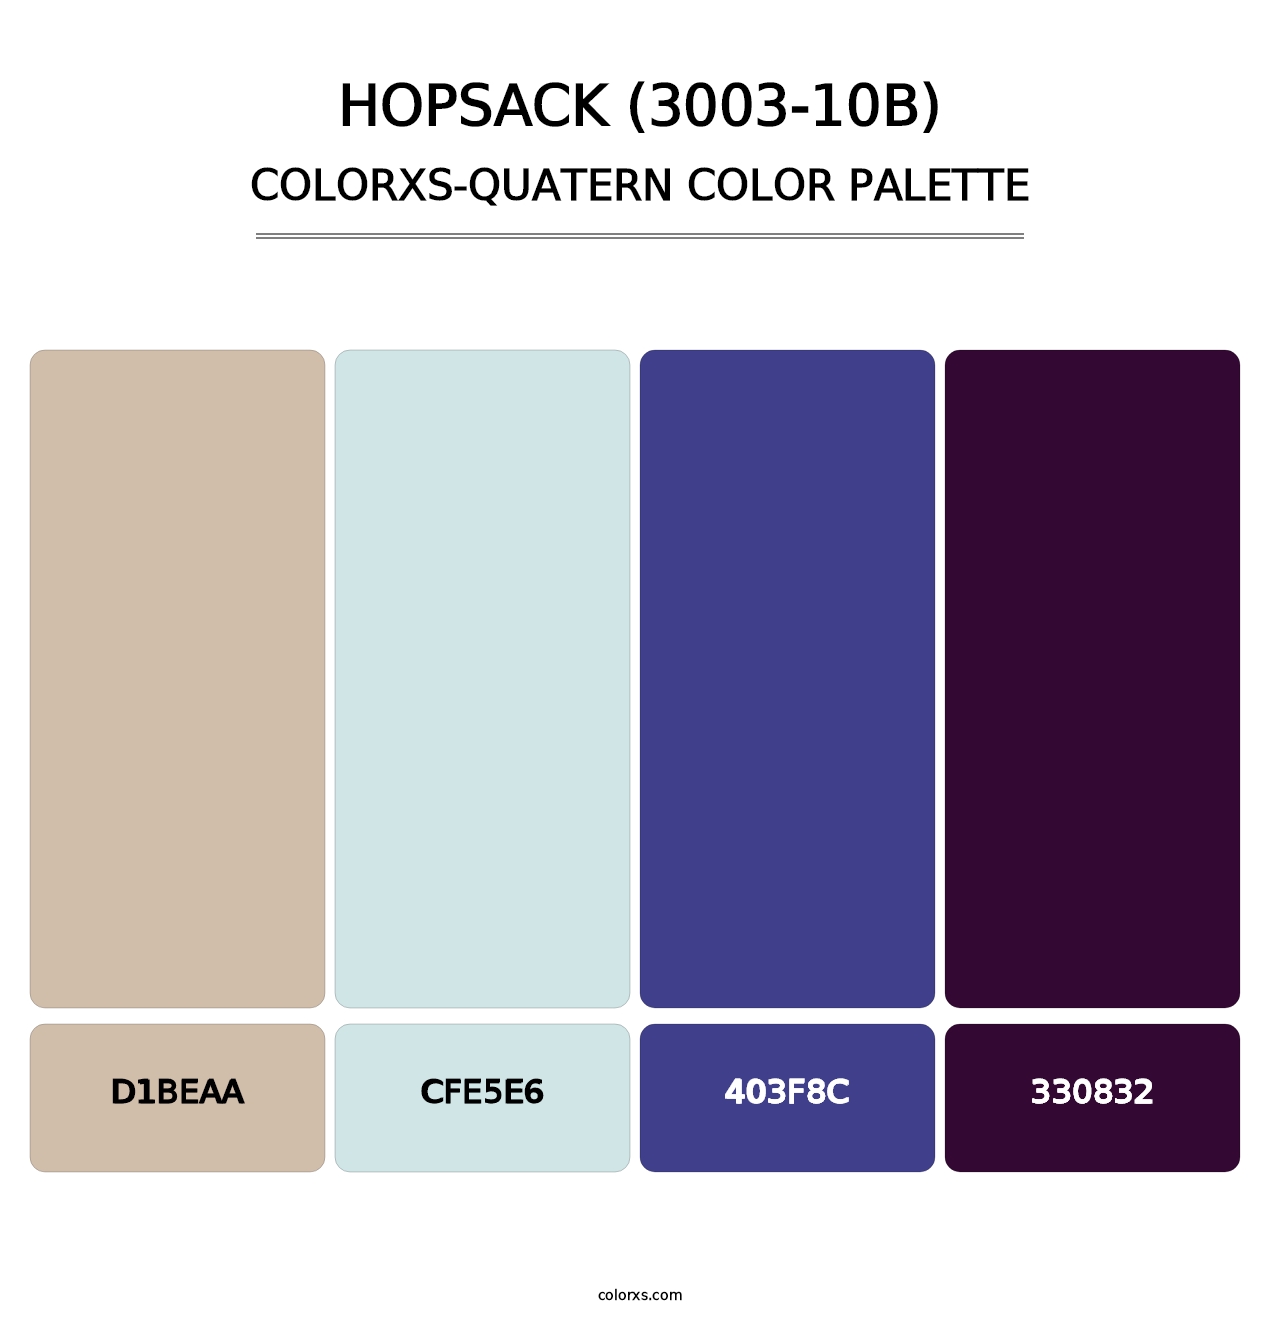 Hopsack (3003-10B) - Colorxs Quatern Palette